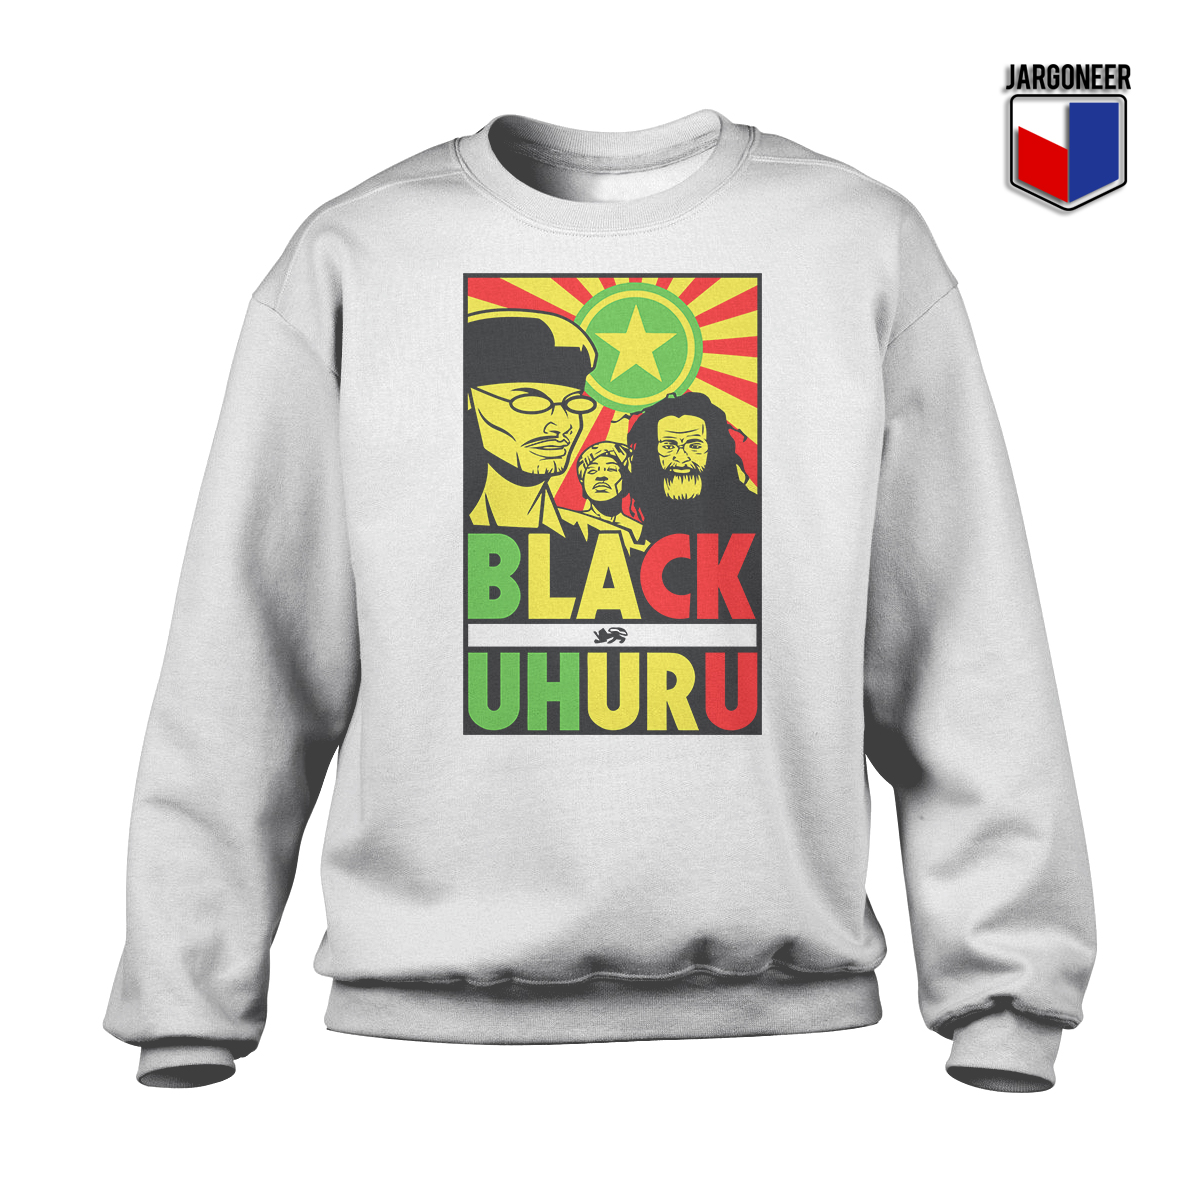 Black Uhuru White SS - Shop Unique Graphic Cool Shirt Designs